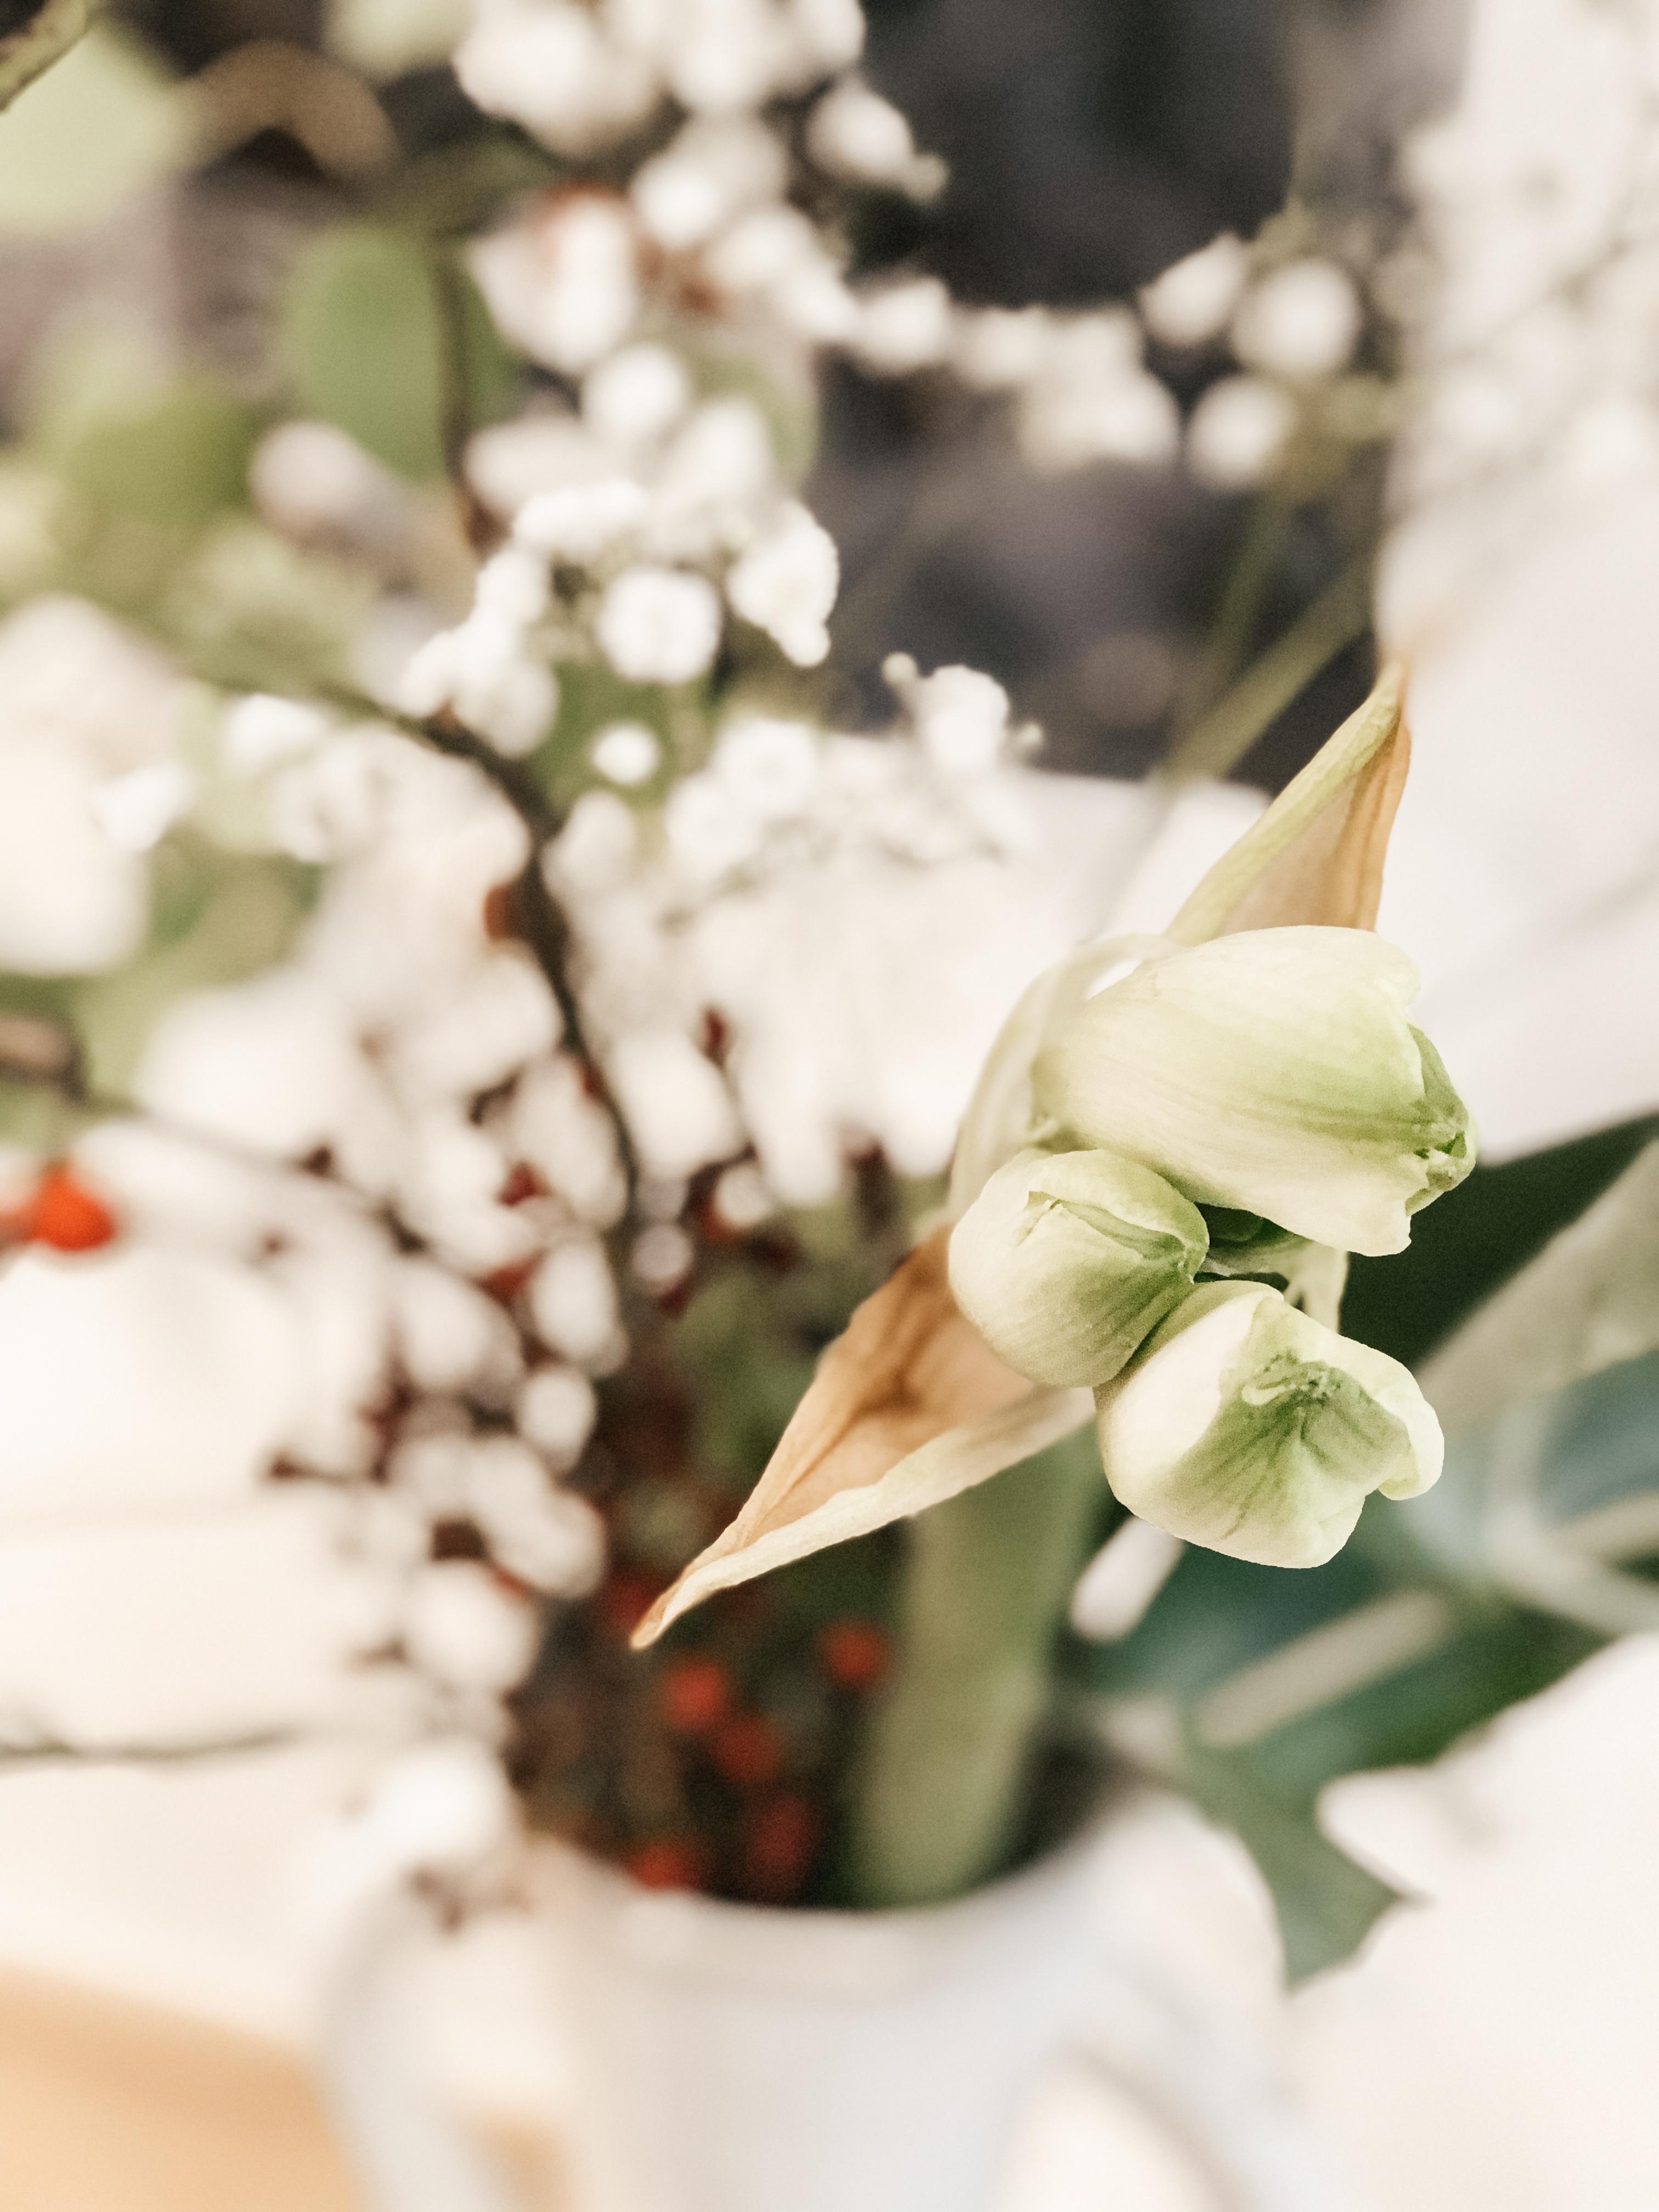 Erste Amaryllis des Jahres. 🤍
#flowers #blumen #amaryllis